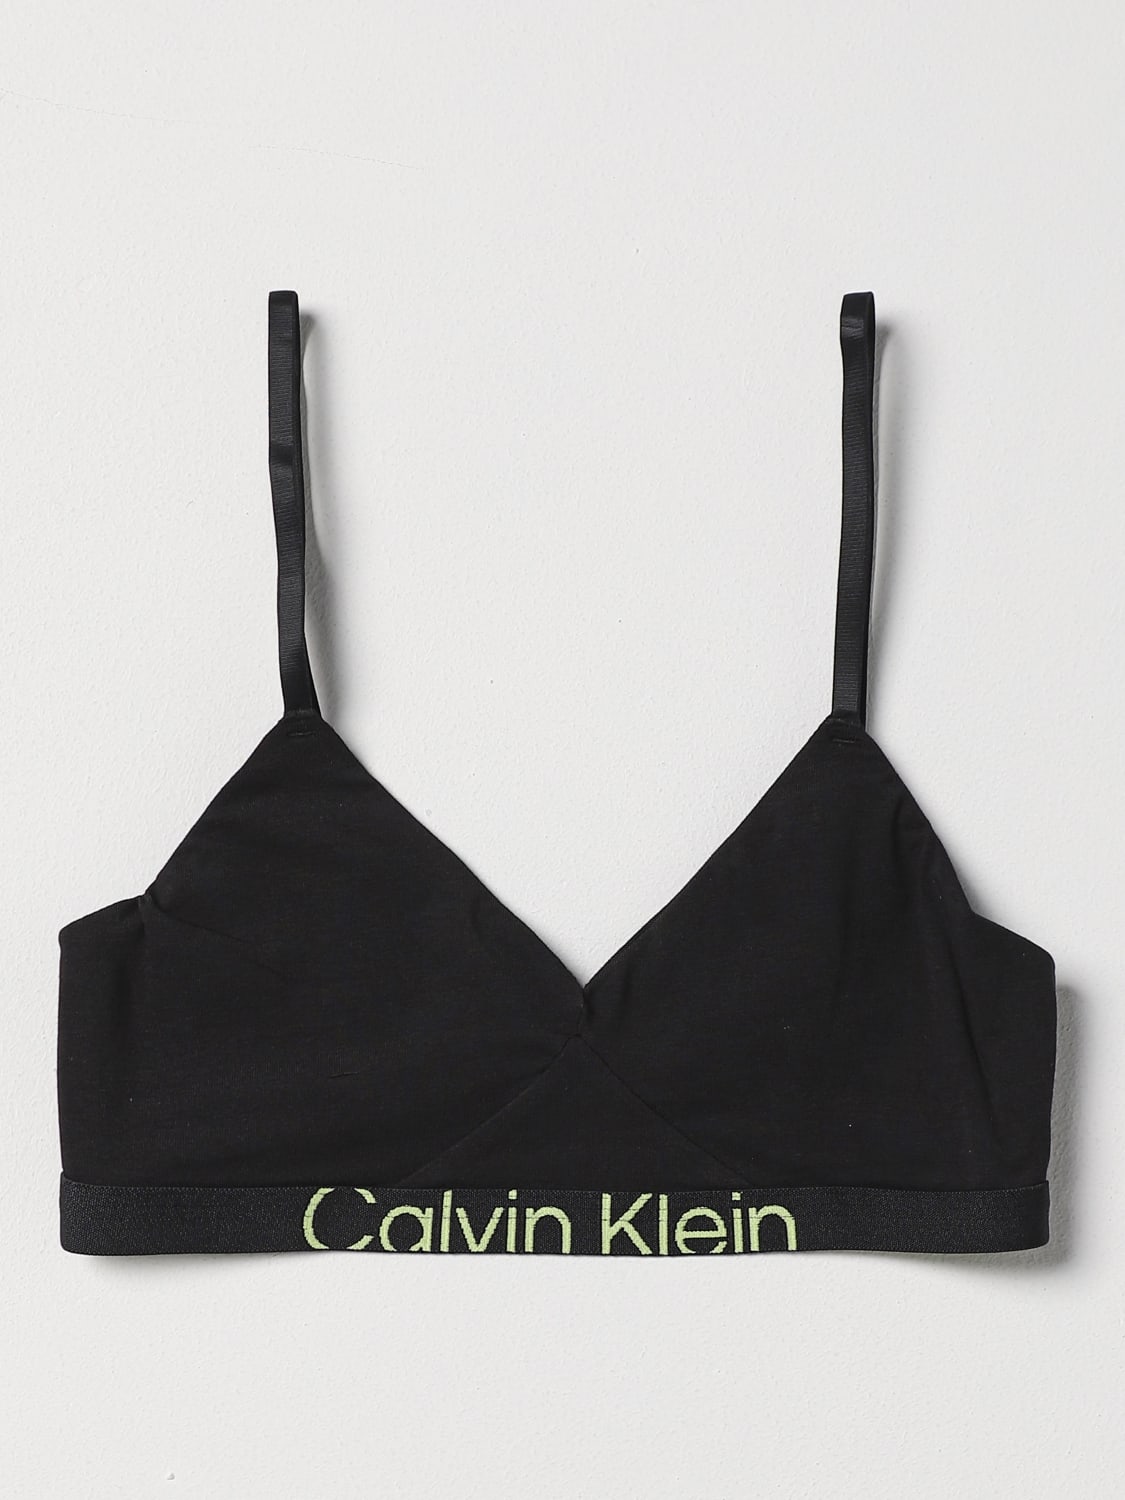 lingerie | 000QF7398E Black Underwear Klein KLEIN woman UNDERWEAR: Calvin CALVIN for lingerie - online at